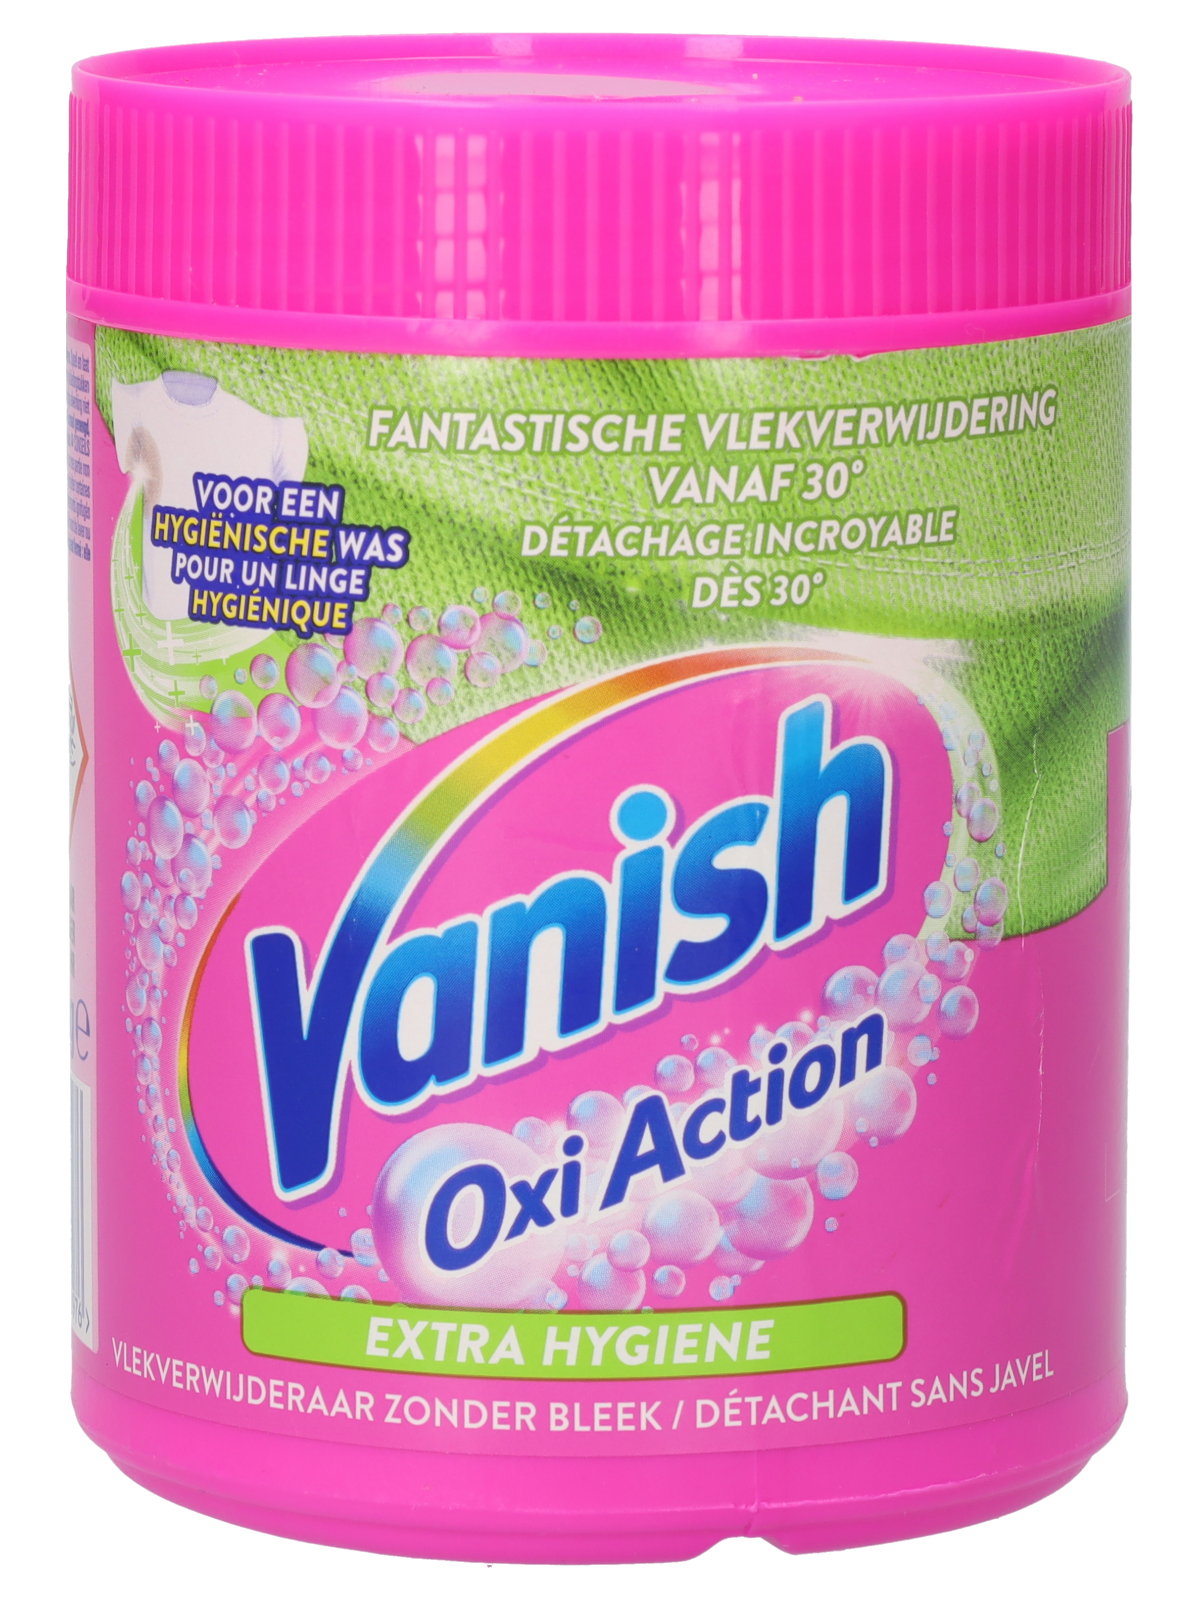 Vanish Oxi Action extra hygiène - Wibra Belgique - Vous faites ça